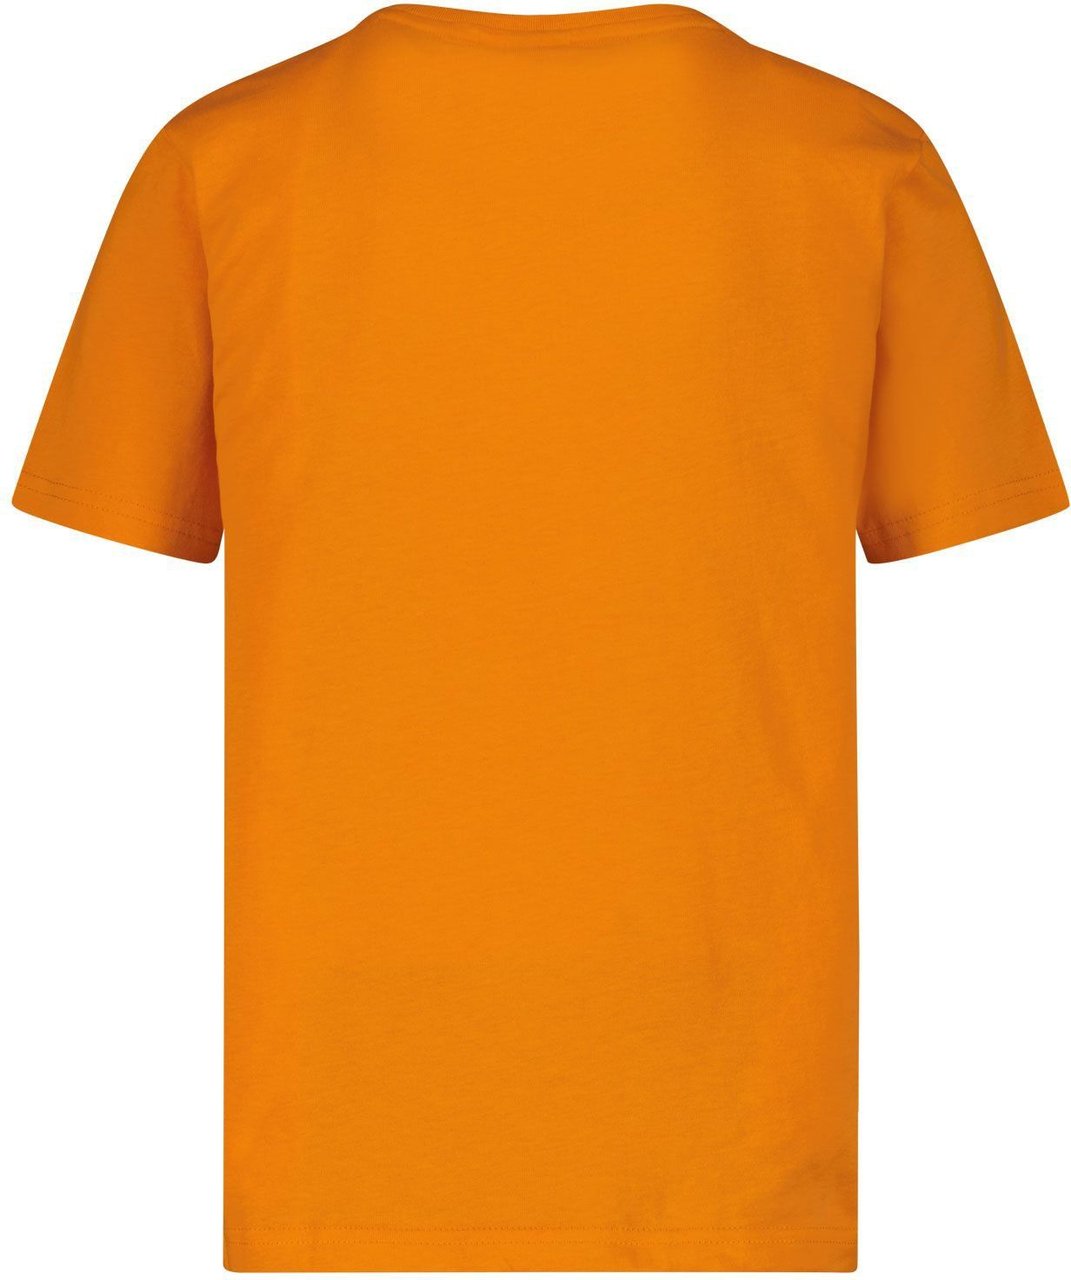 Hugo Boss Boss J25M00 kinder t-shirt oranje Oranje